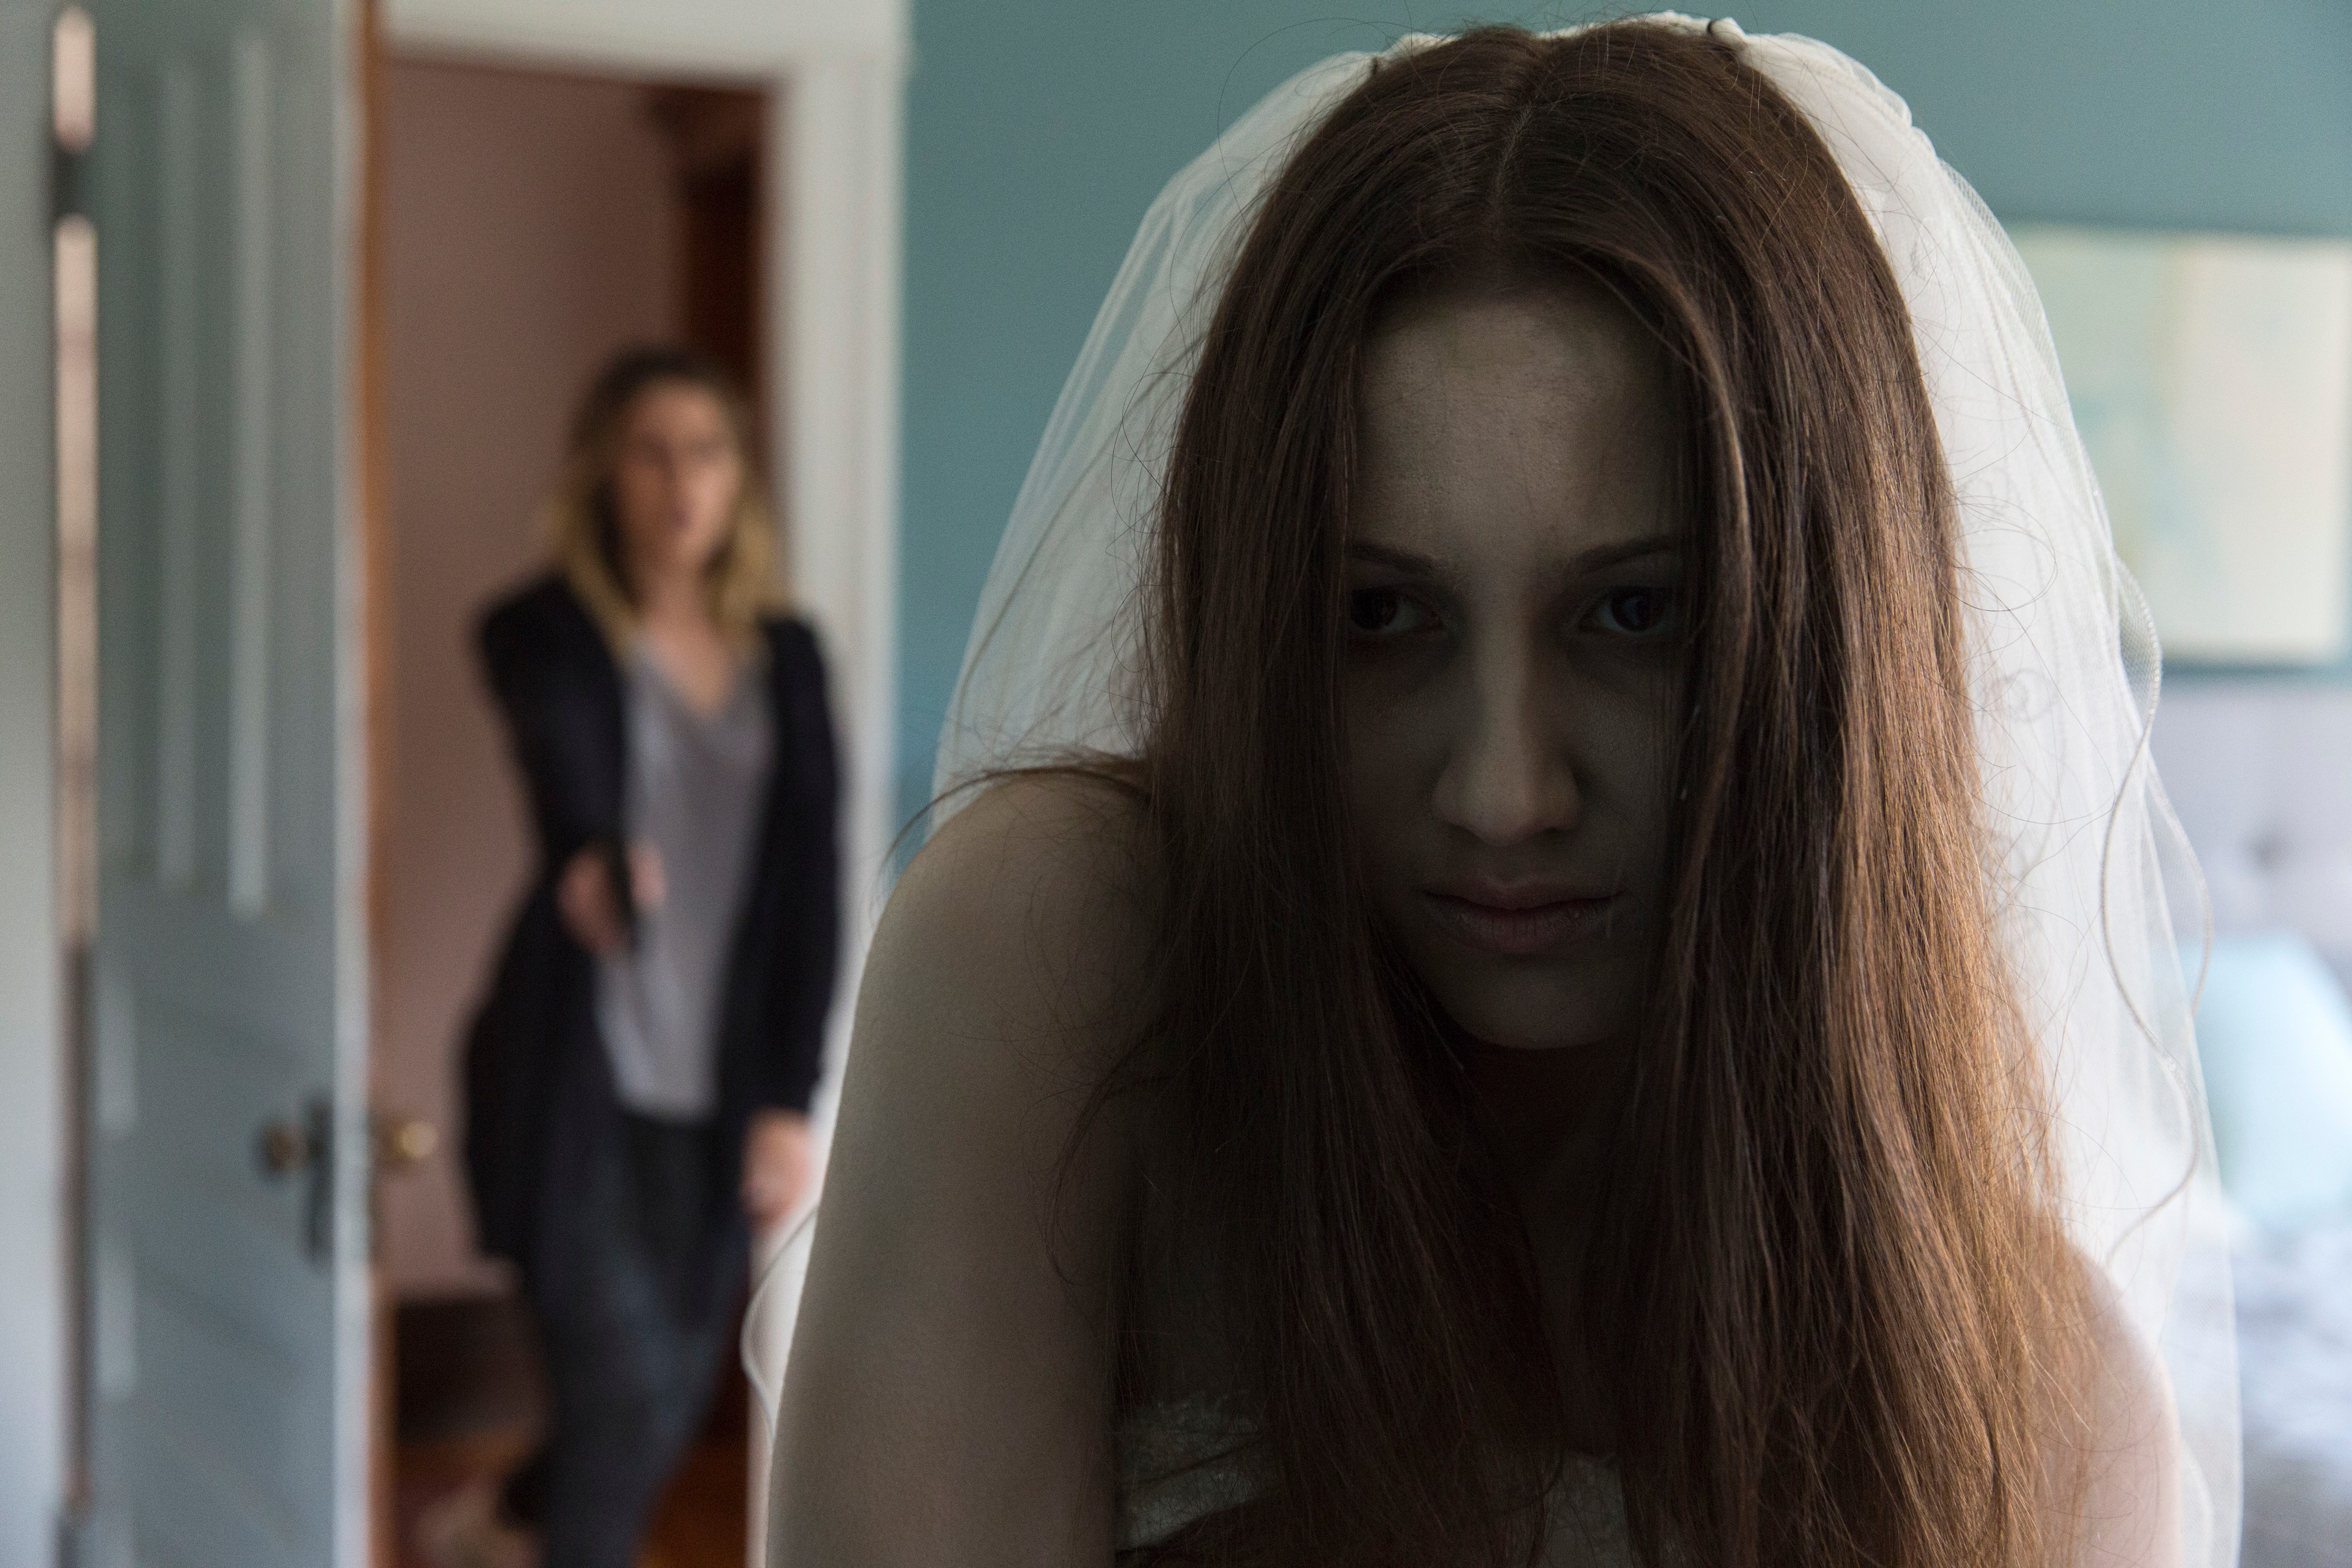 Zoe Belkin as a ghost in horror movie Isabelle